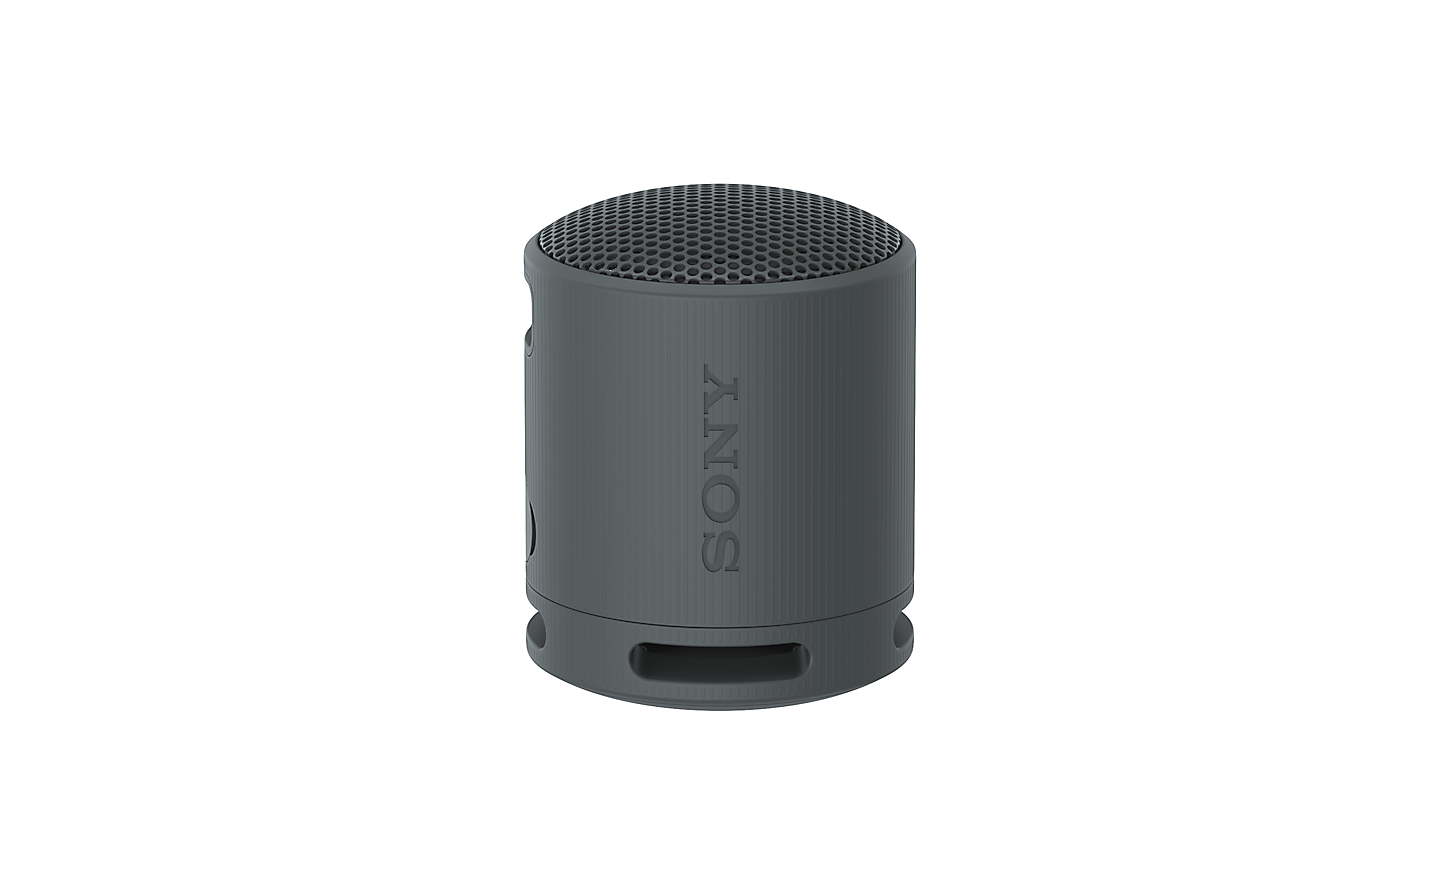 Vue à 360 degrés de l'enceinte SRS-XB100 de Sony